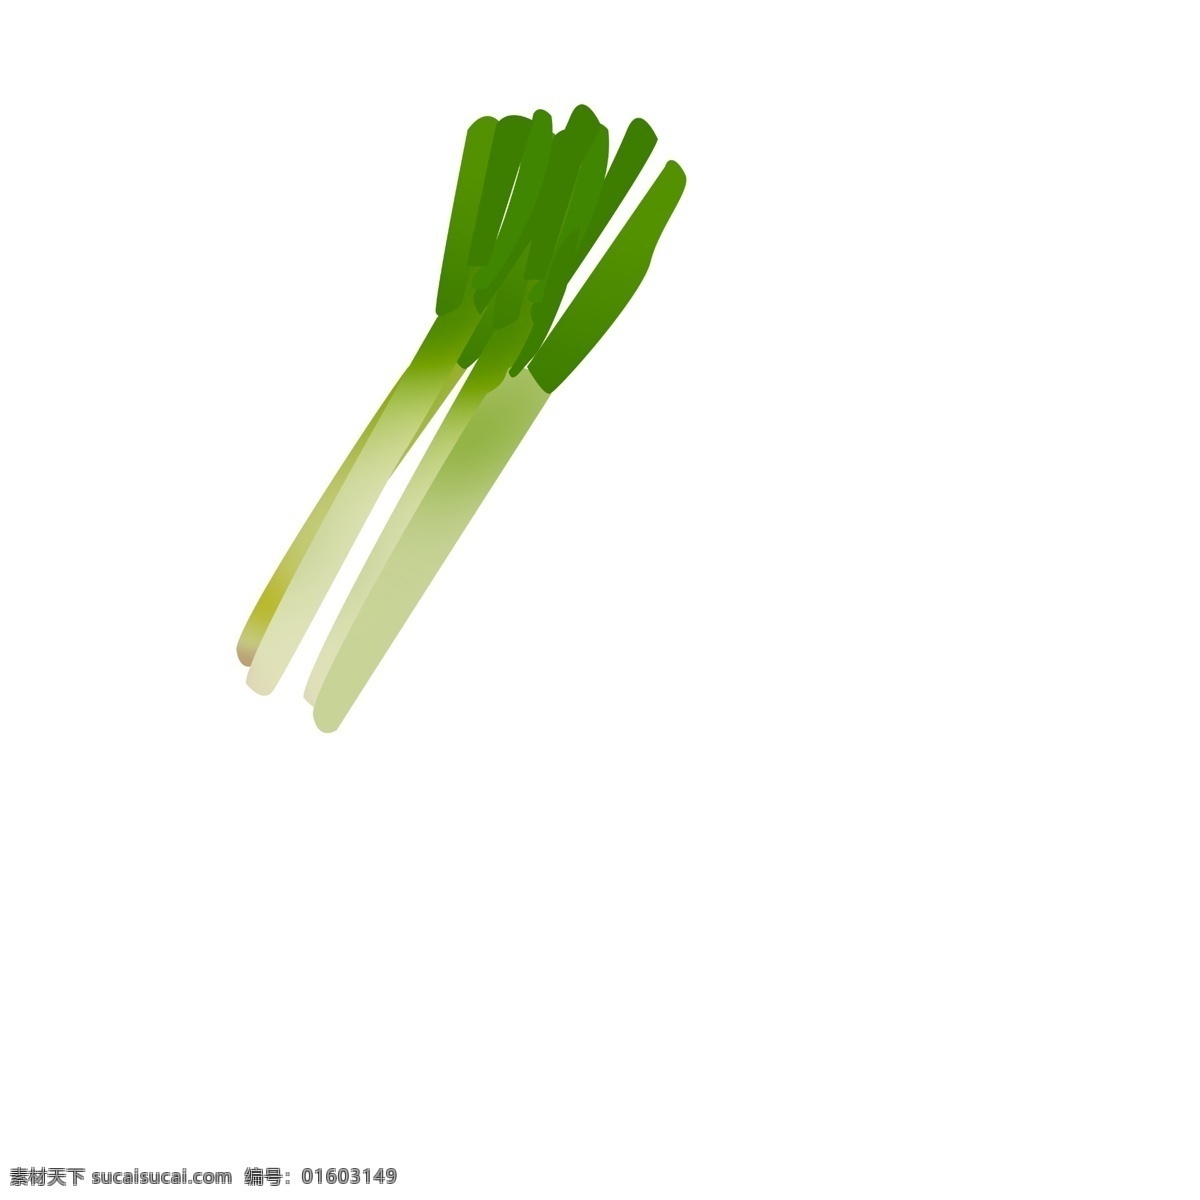 手绘 蔬菜 大葱 插画 新鲜的蔬菜 卡通插画 手绘蔬菜插画 有机的蔬菜 绿色的葱叶 长长的葱白